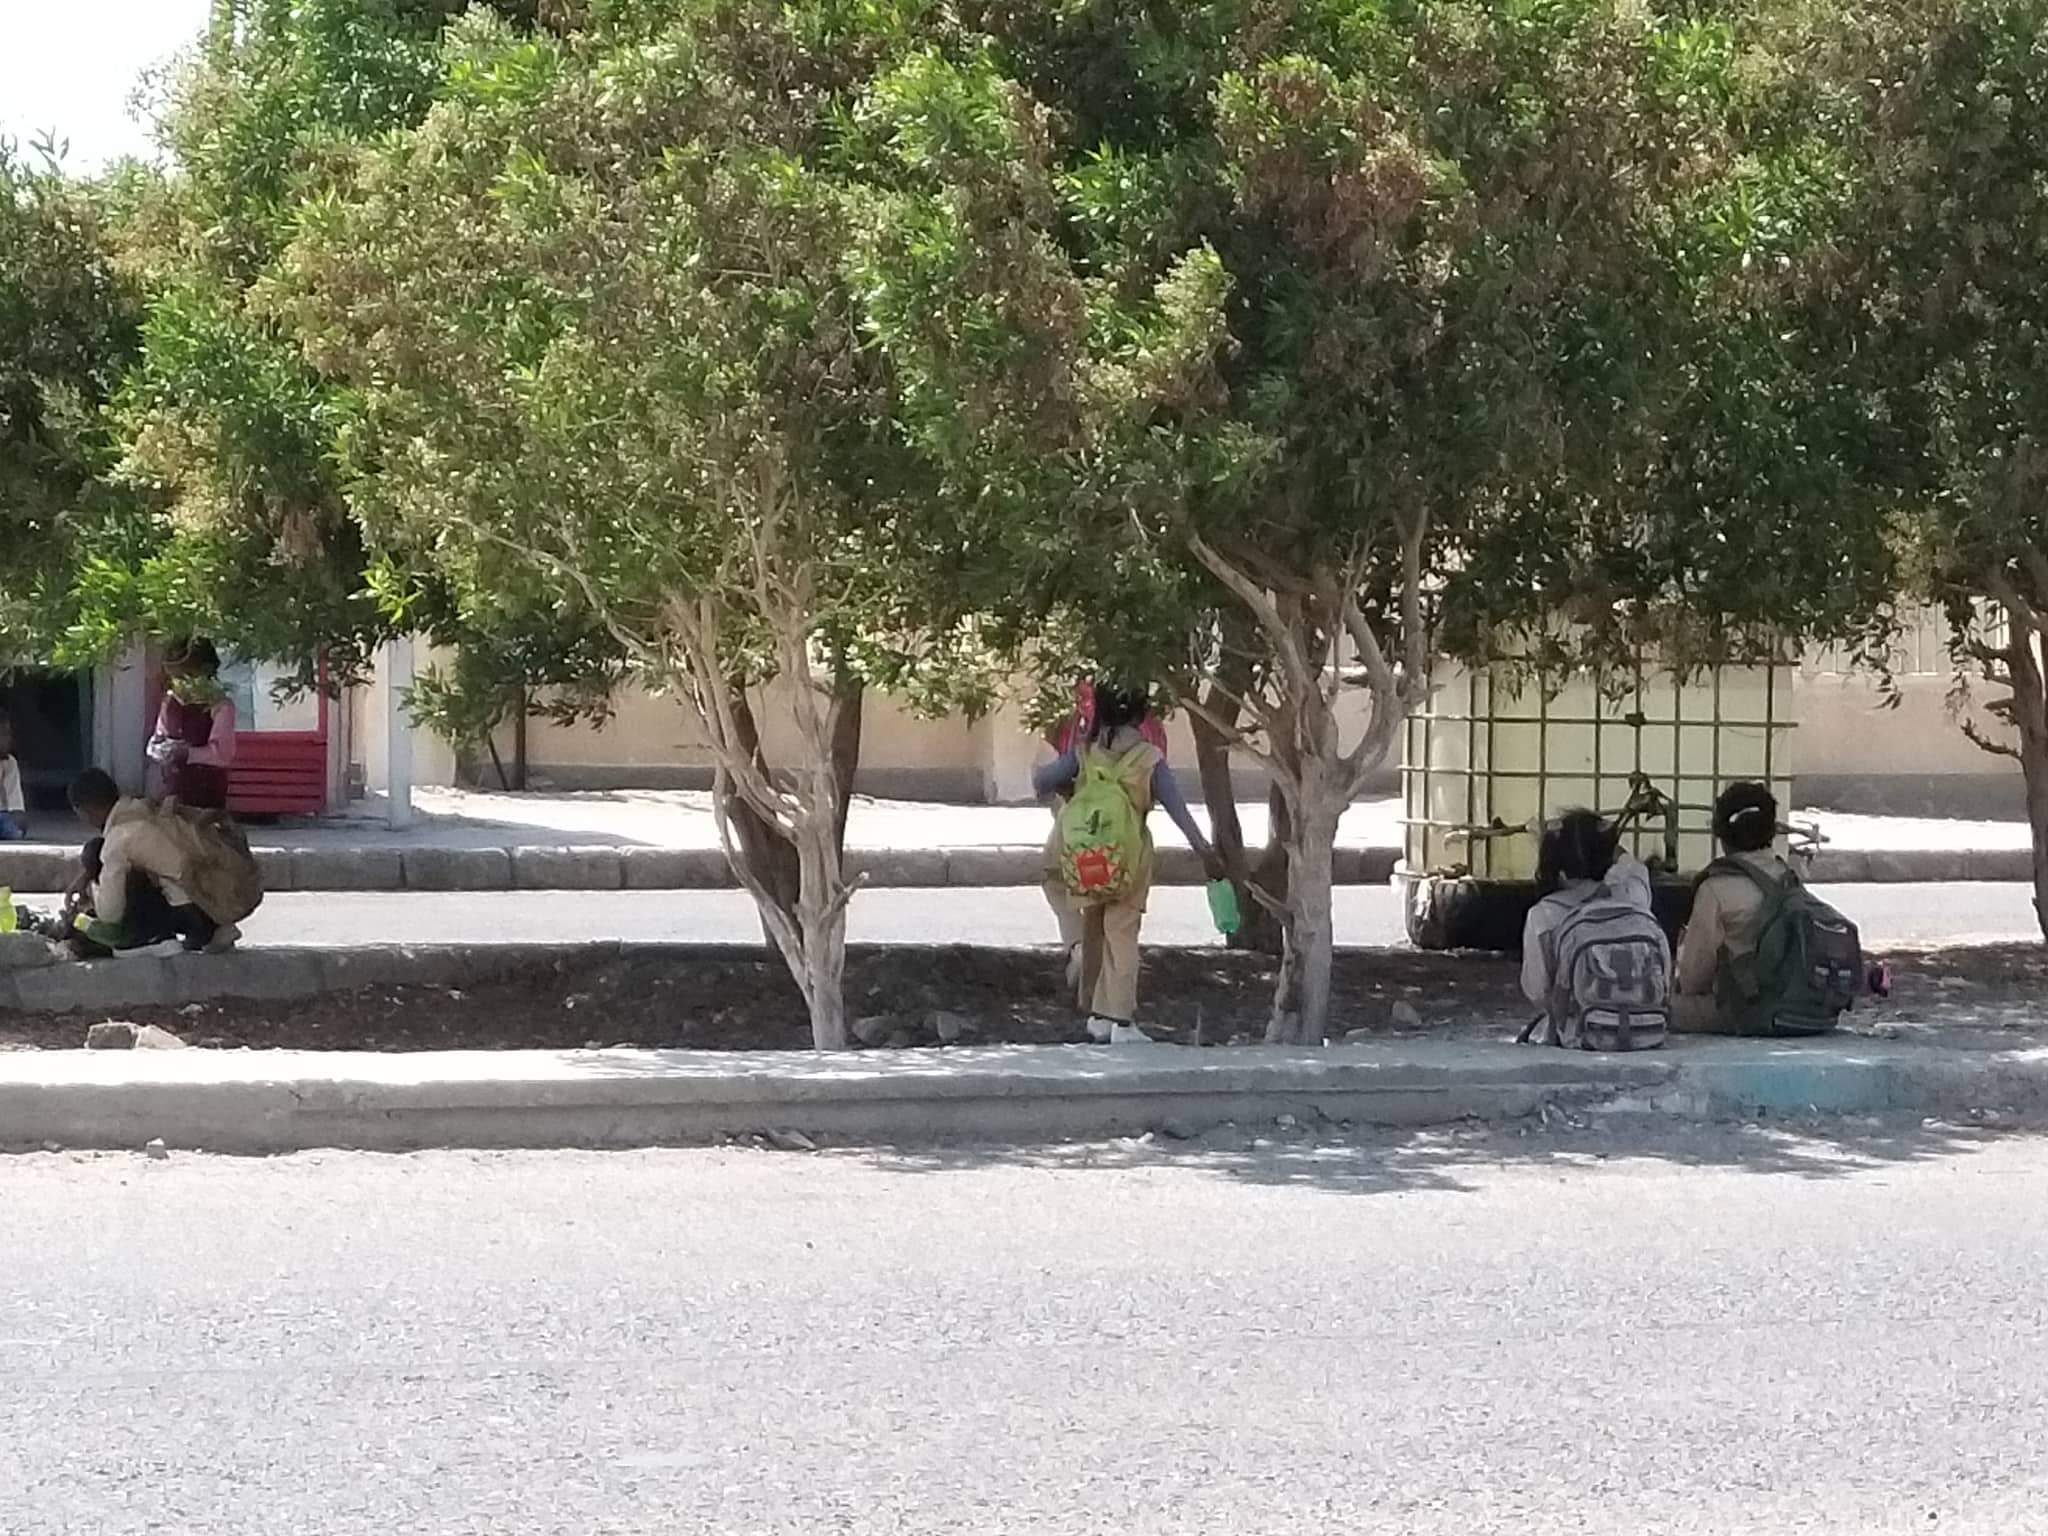 4- الطلاب يستظلون بالاشجار بعد الخروج من المدارس